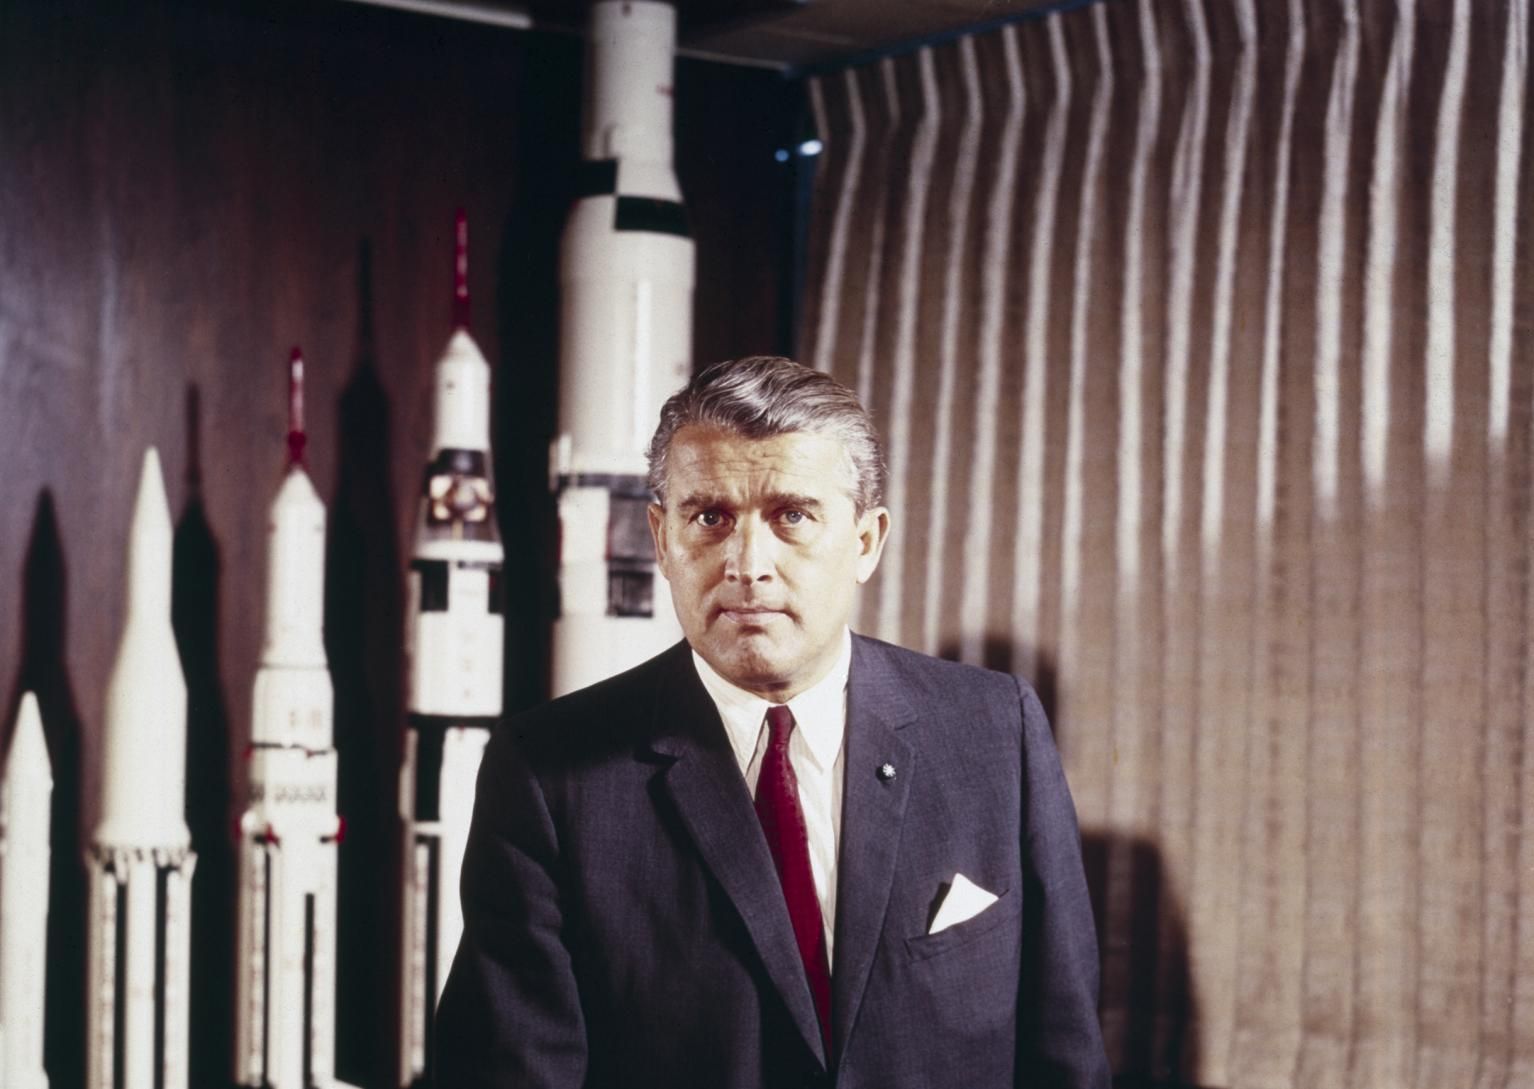 Wernher Von Braun posing in front of rocket models